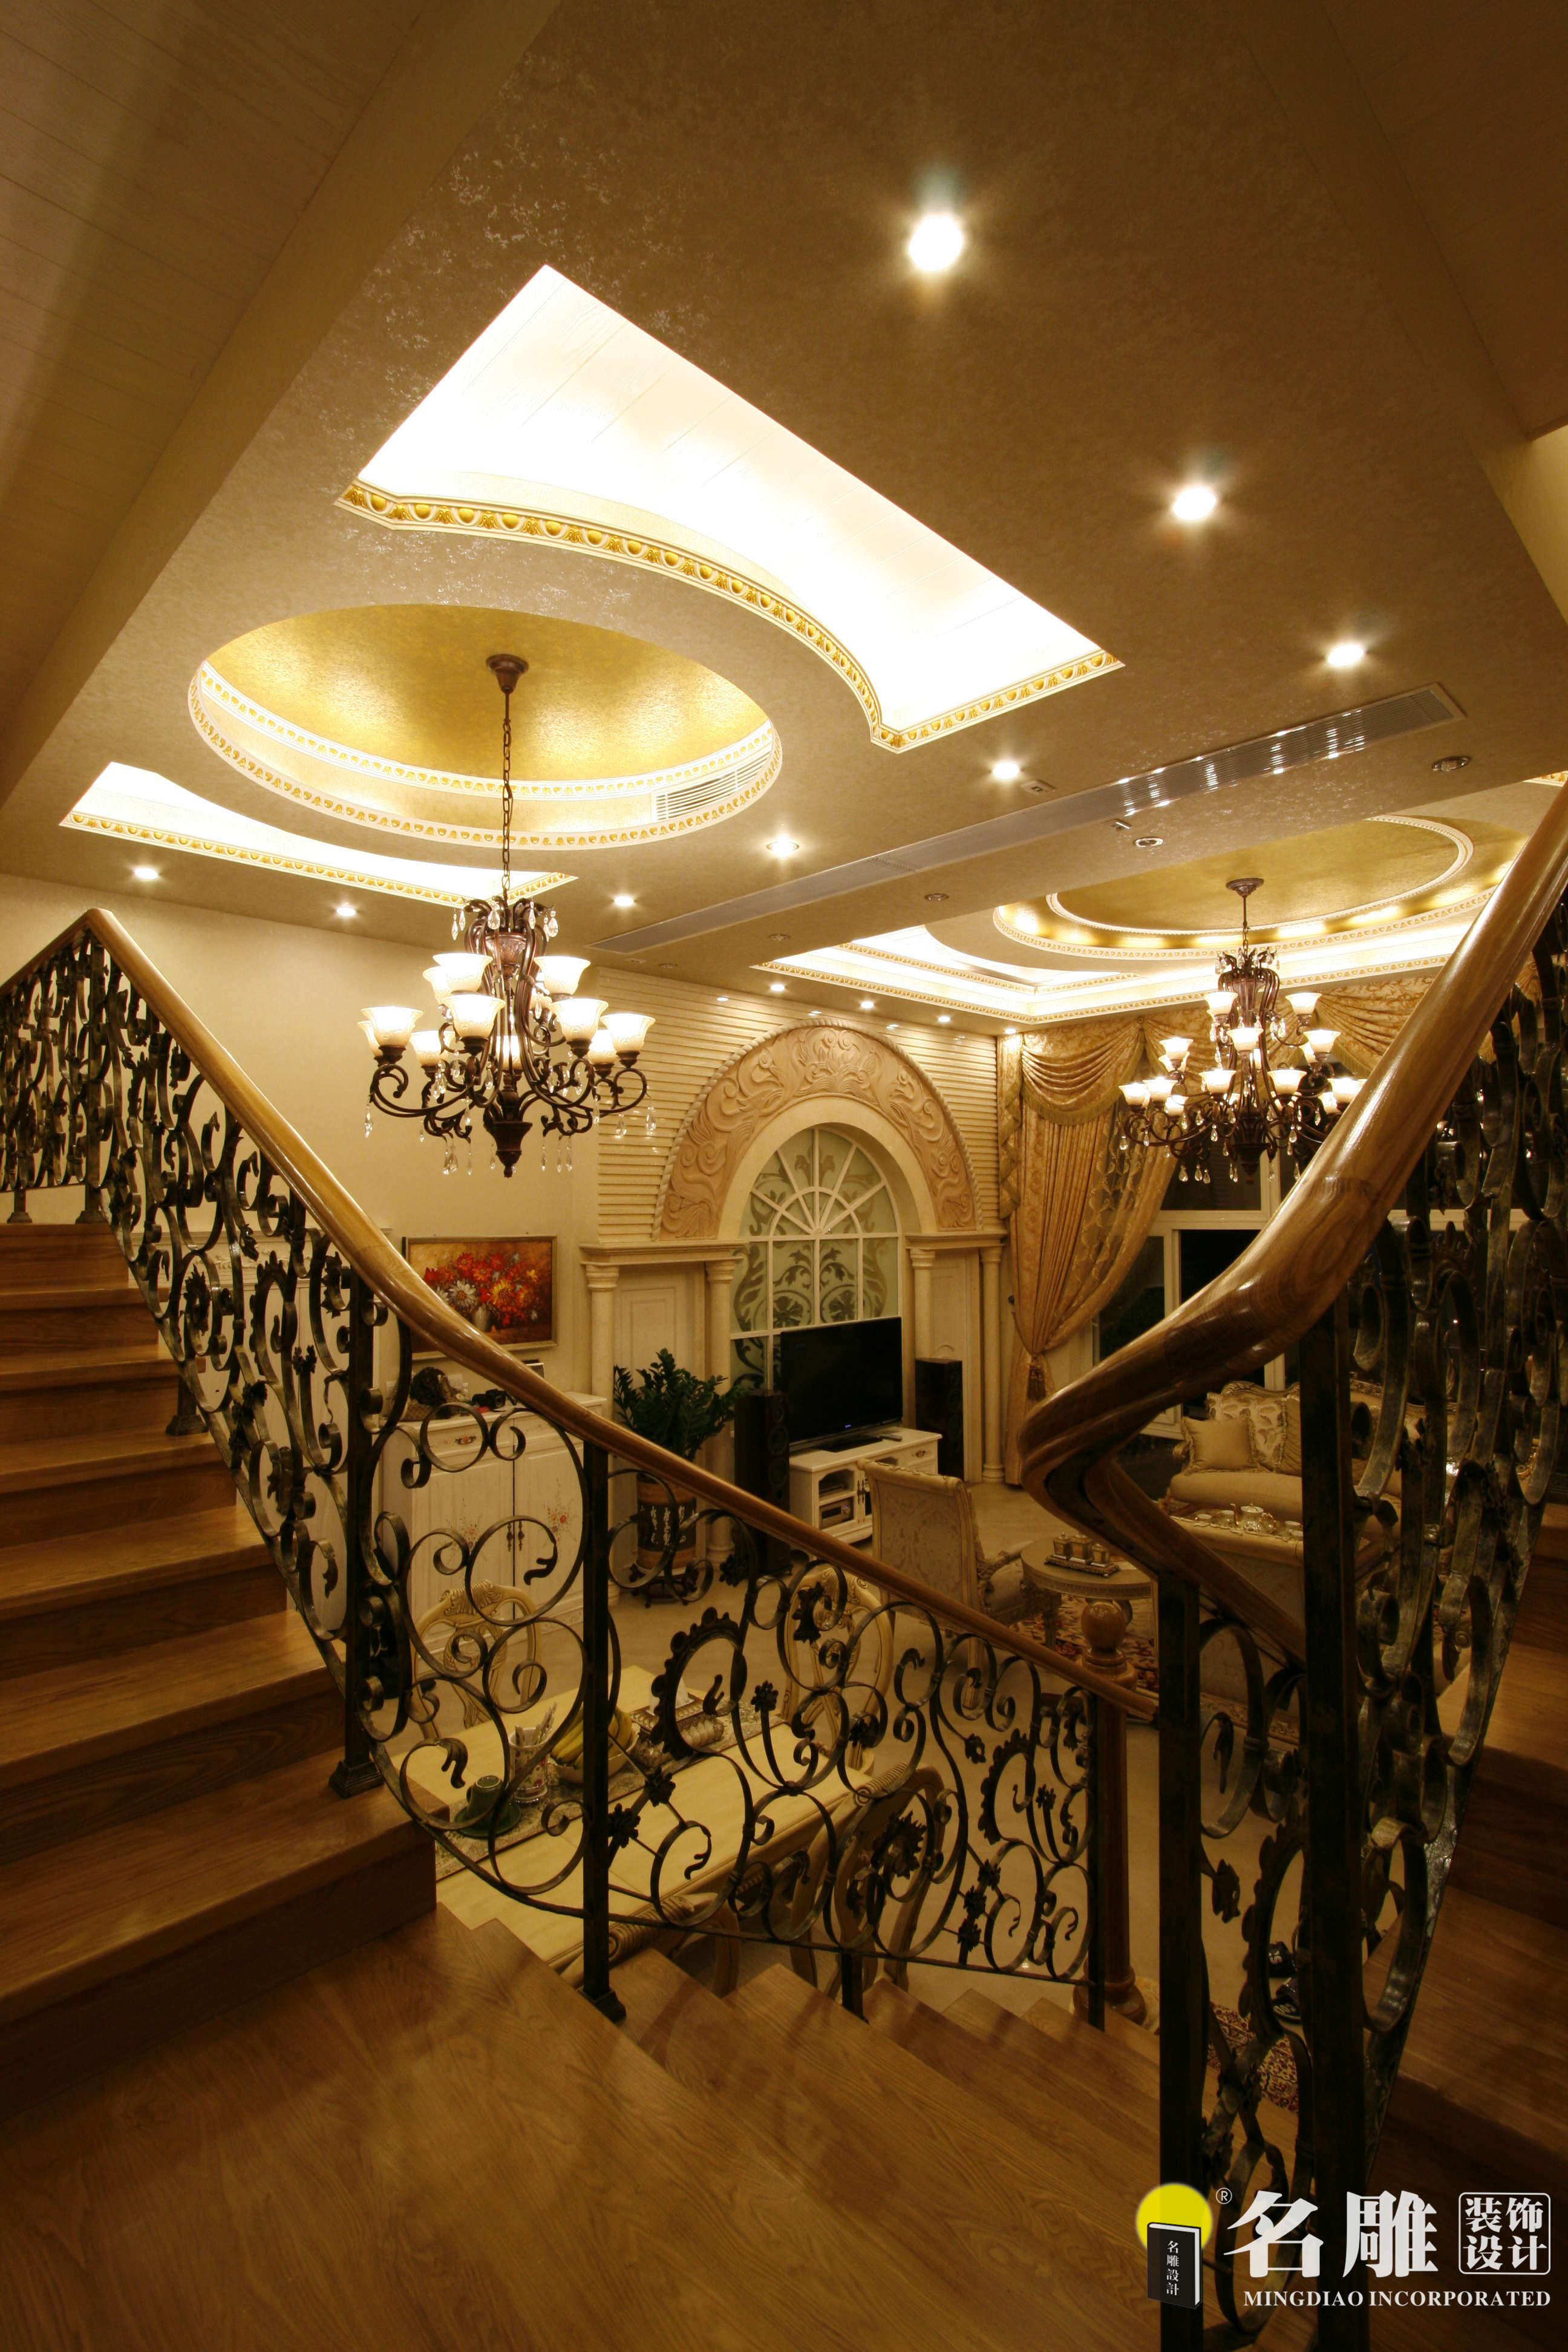 欧式 四居室 三代同堂 纯水岸 豪华装饰 复式 楼梯 楼梯图片来自名雕装饰设计在欧式风格200平复式楼阁豪华装饰的分享